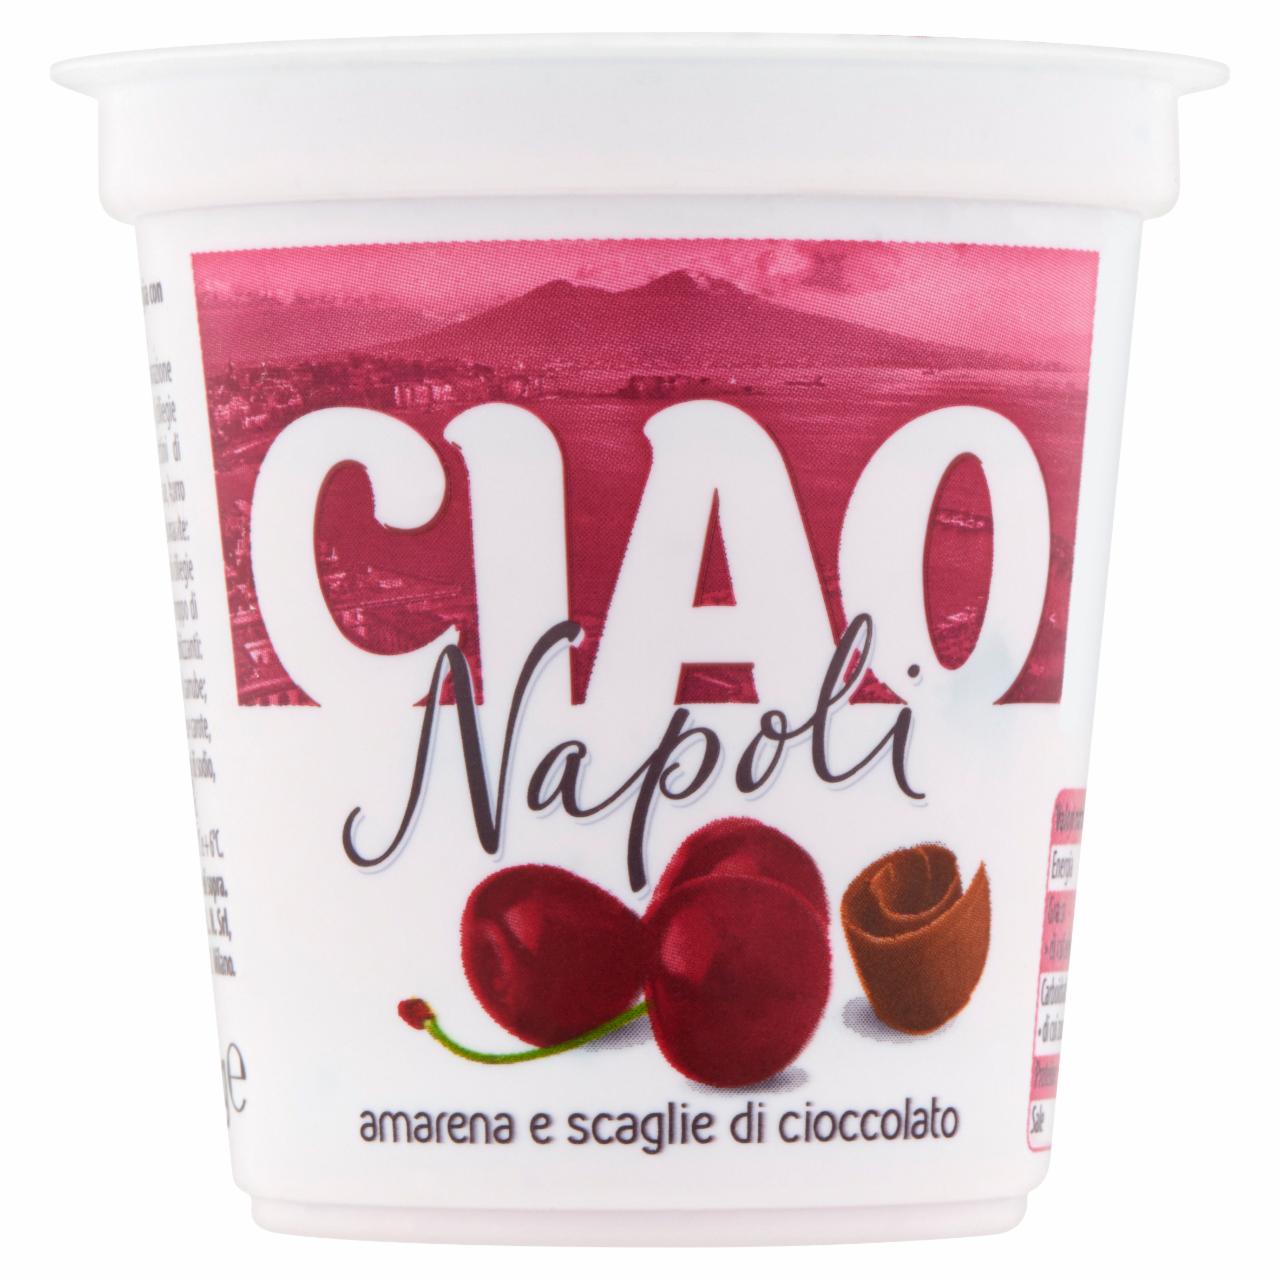 Képek - Ciao Olaszország meggyes-csokoládés desszertjoghurt 125 g